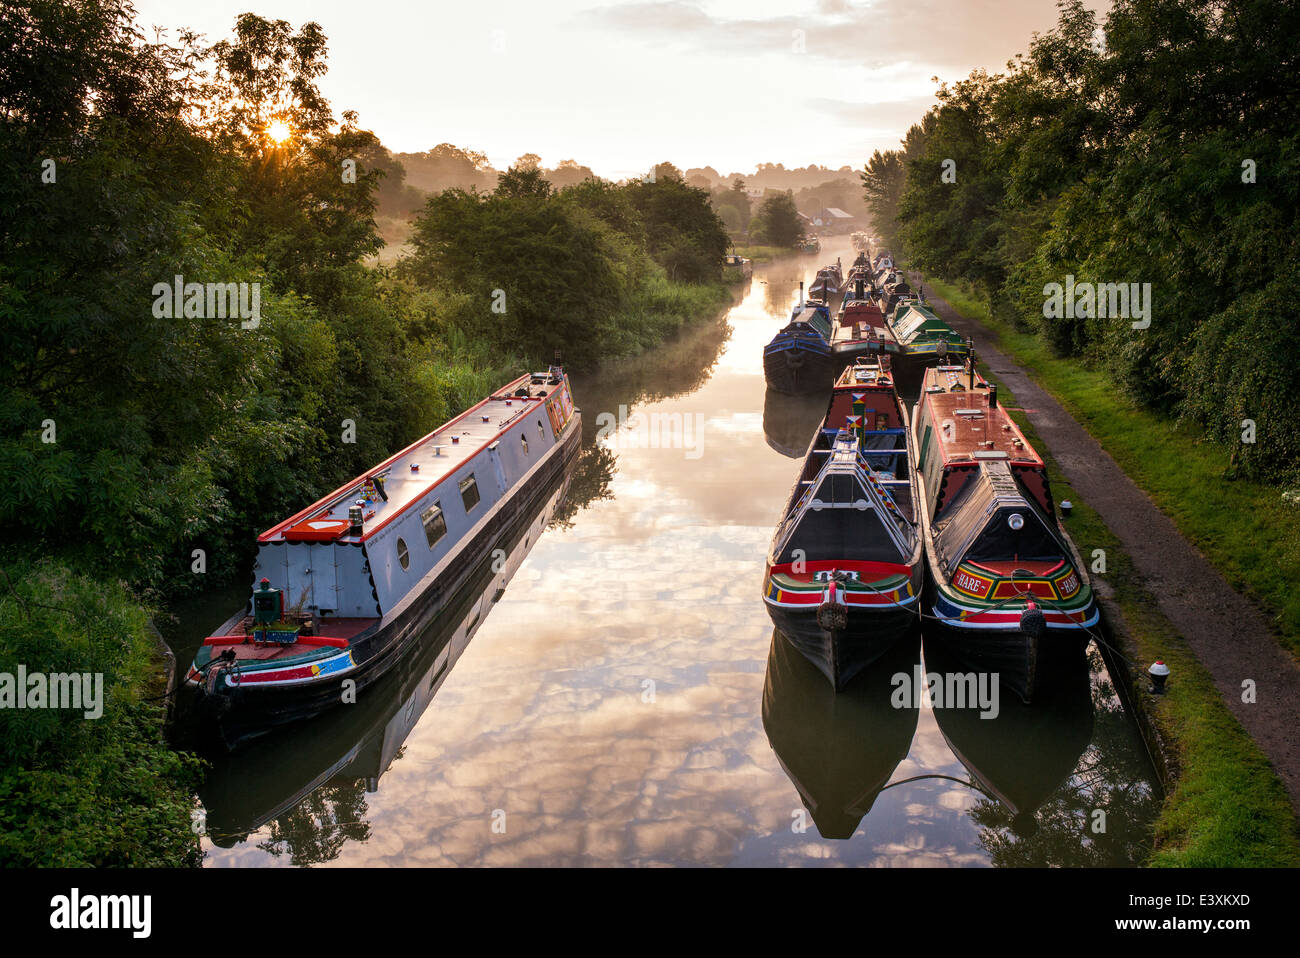 Braunston Narrowboats au Canal Historique Rallye sur le Grand Union canal au lever du soleil. Braunston, Northamptonshire, Angleterre Banque D'Images